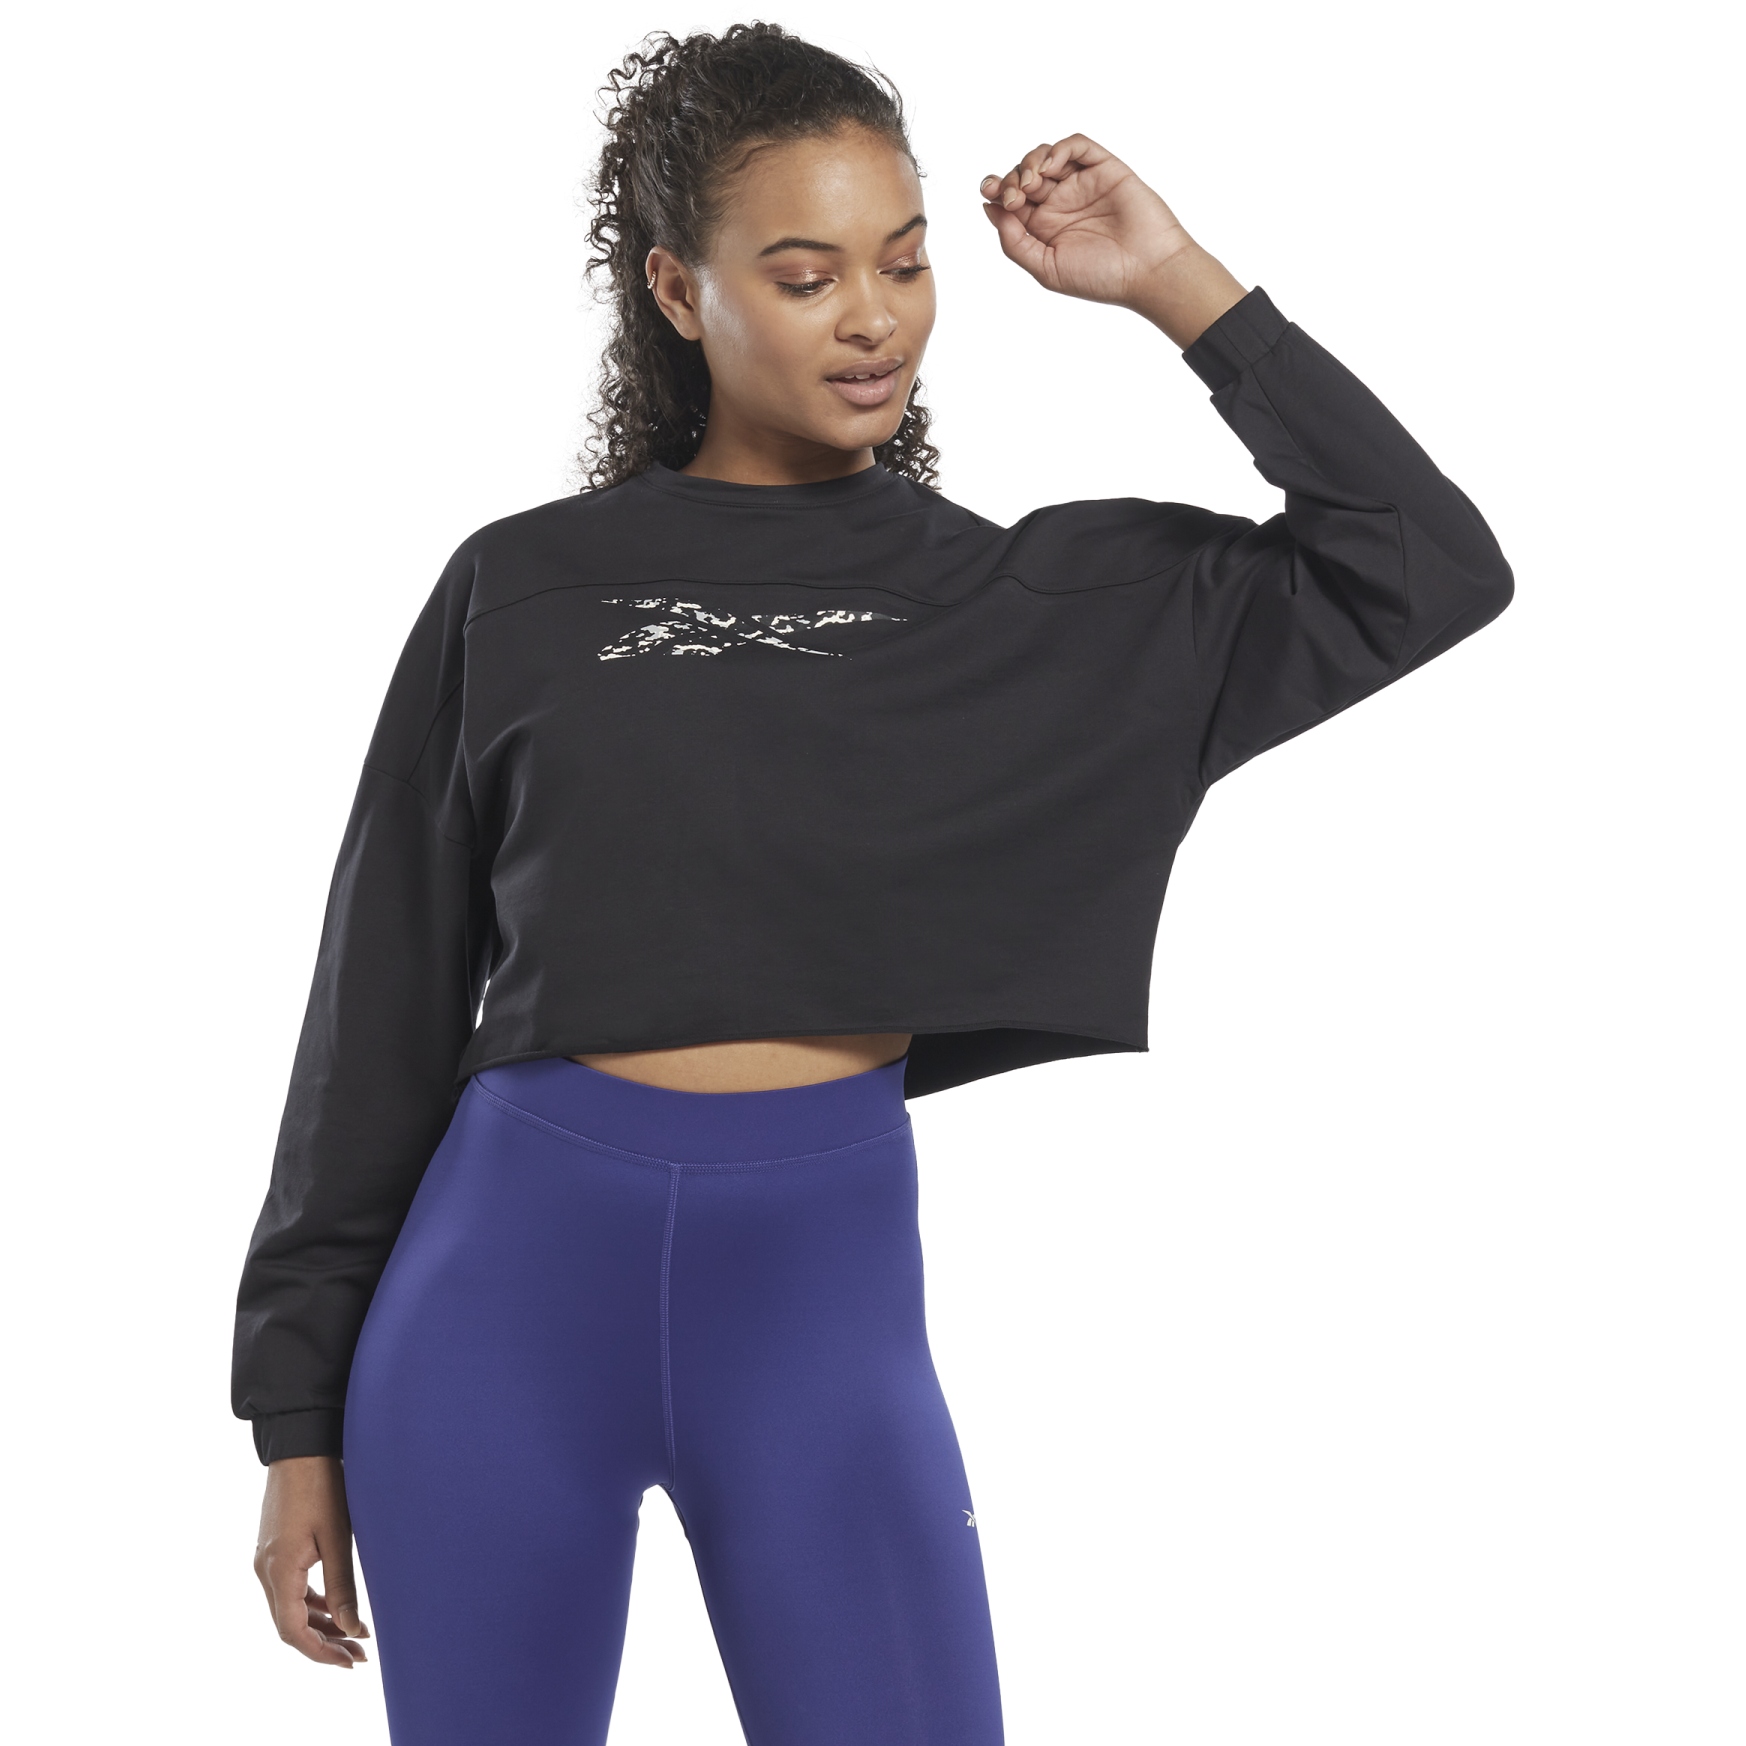 Produktbild von Reebok Modern Safari Sweatshirt Damen - schwarz